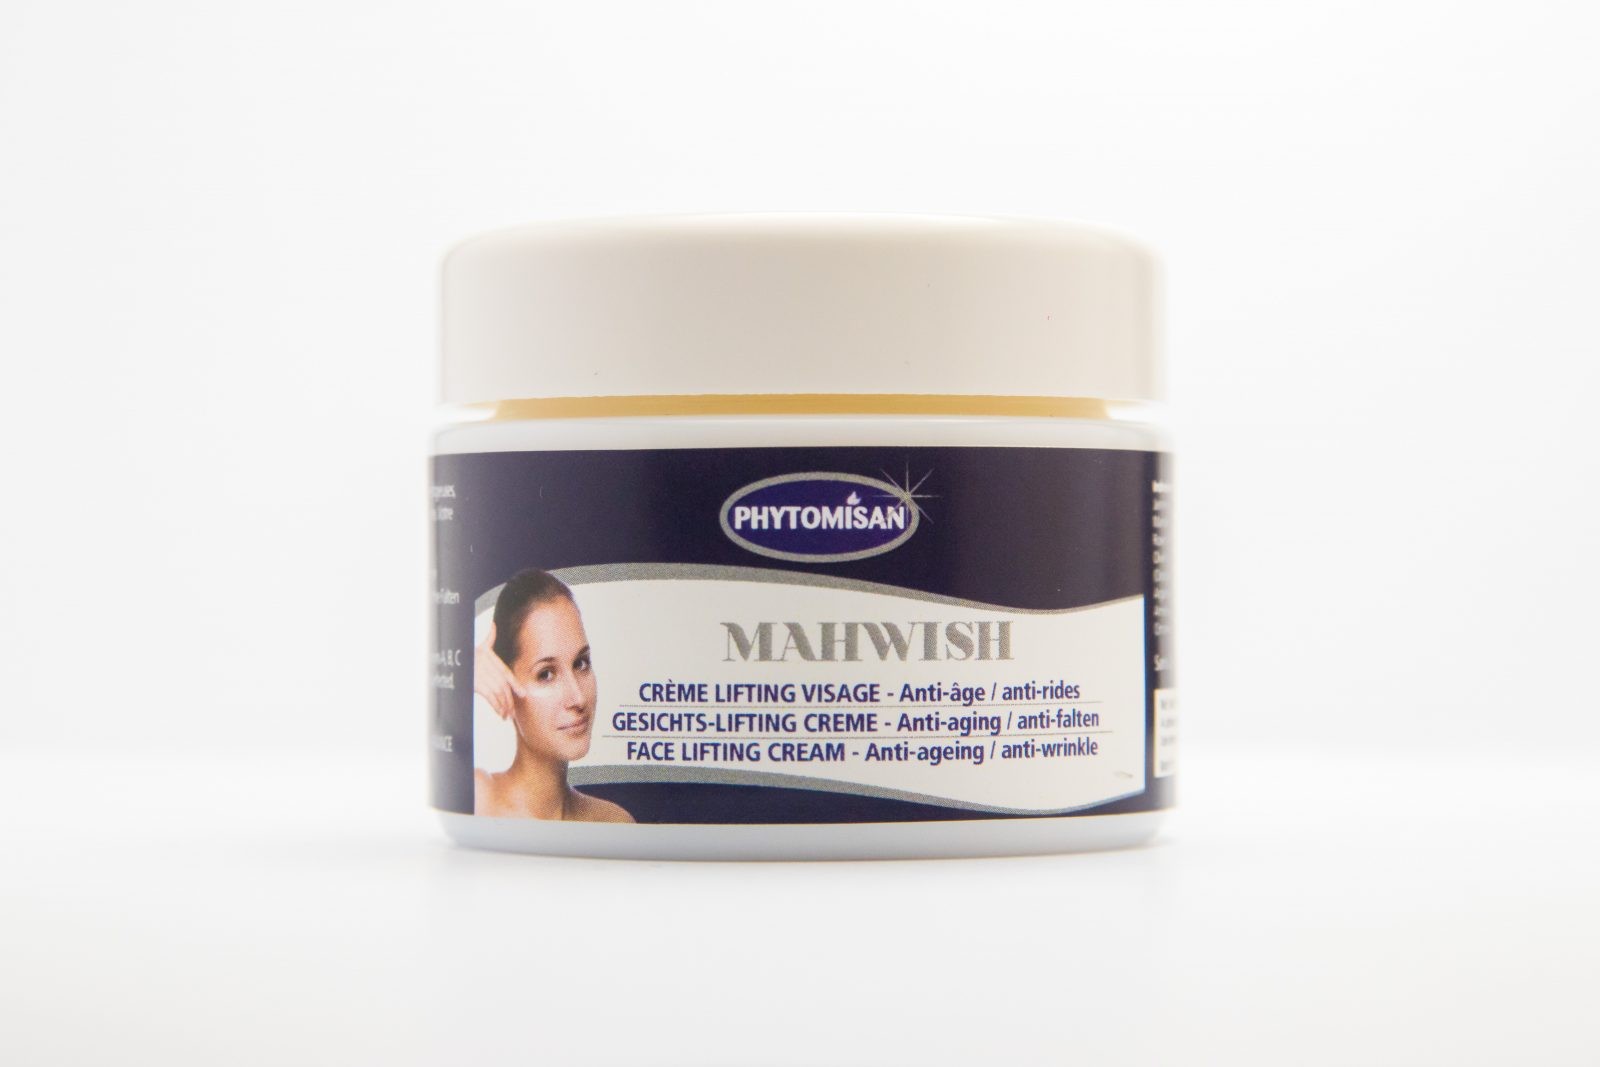 Mahwish Facelifting-Creme